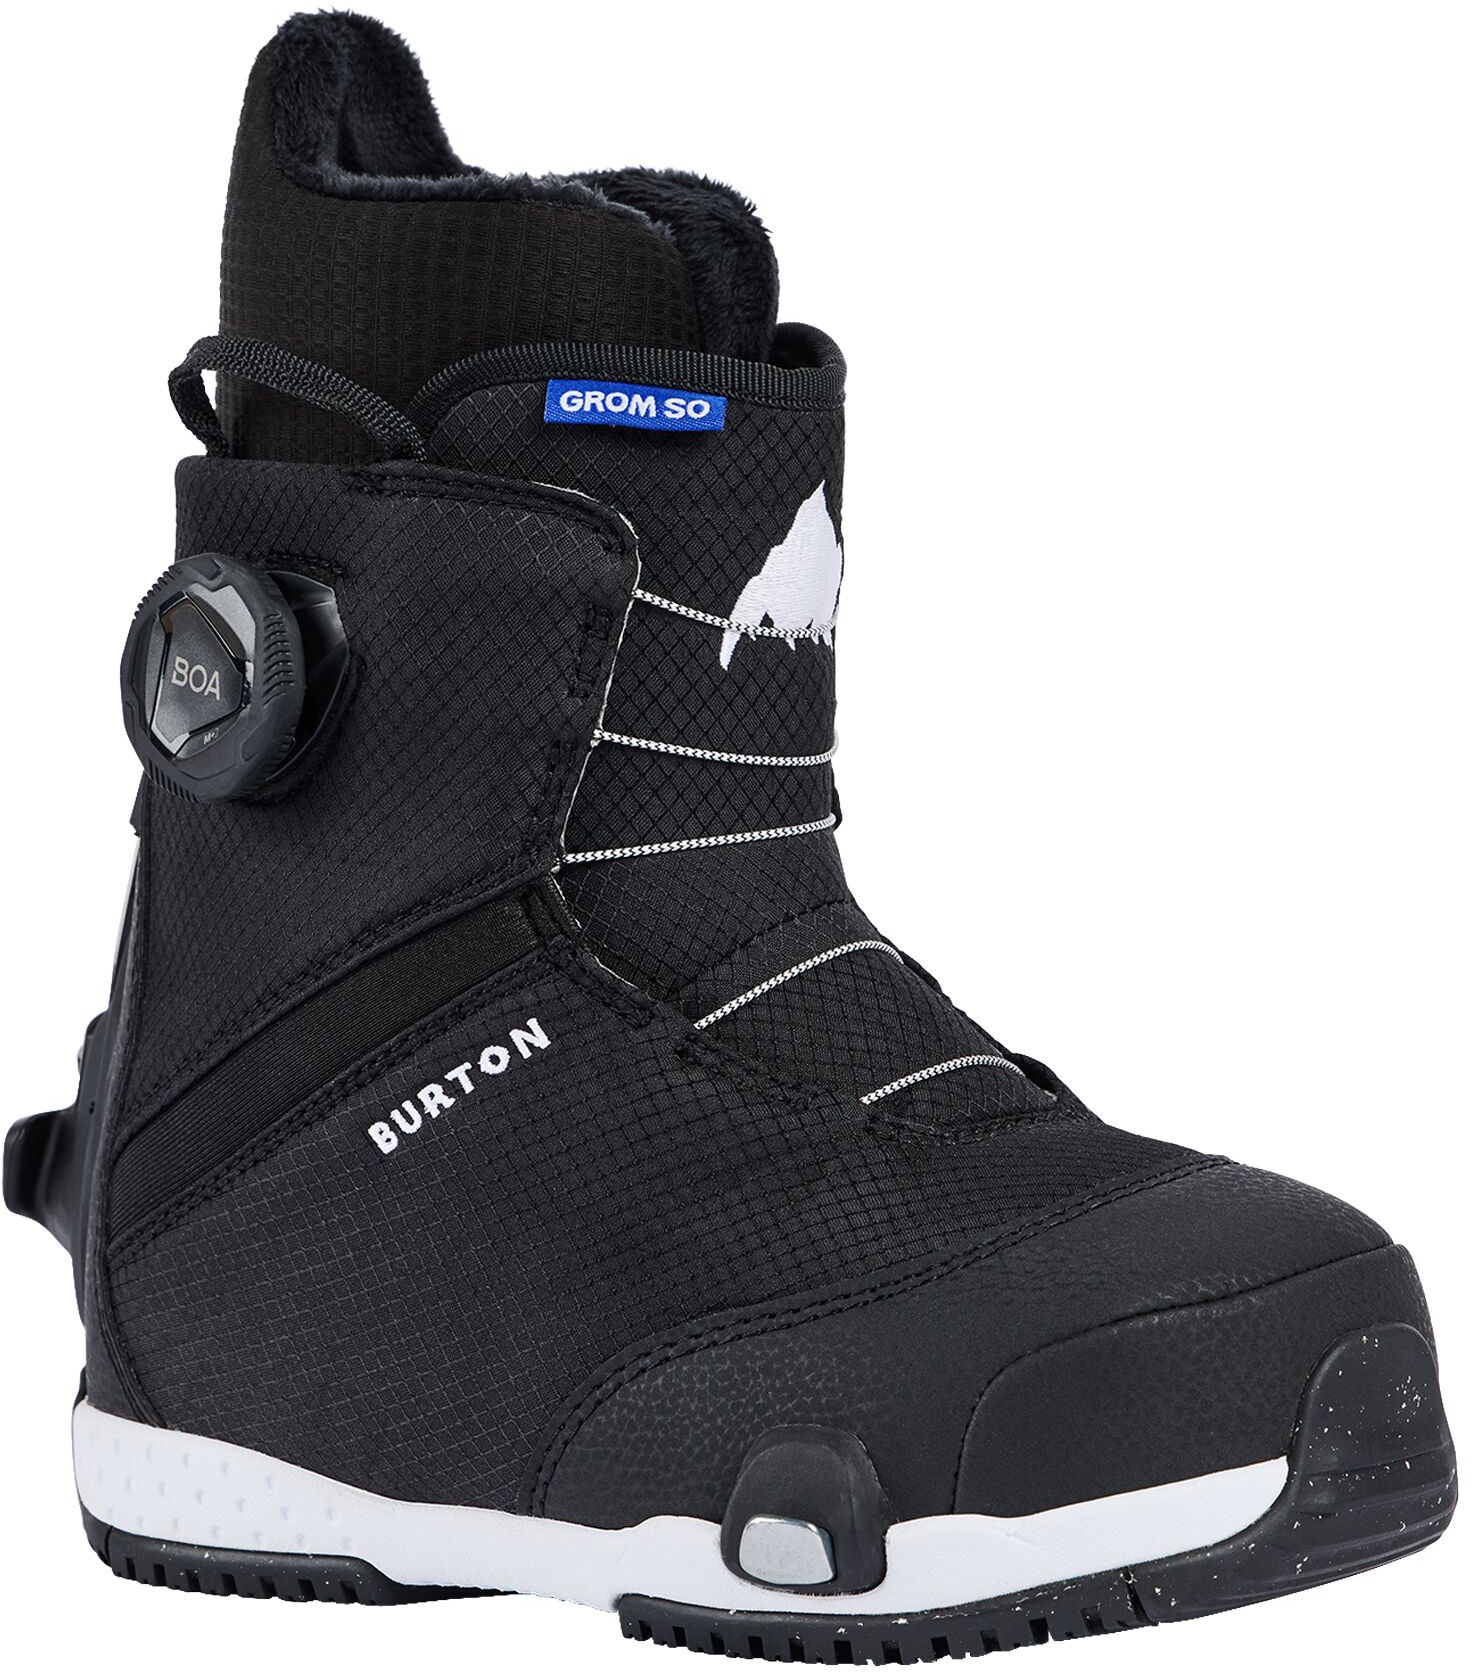 Ботинки для сноуборда Grom Step On - Детские - 2023/2024 Burton, черный детские сноубордические ботинки burton grom boa р 11c white